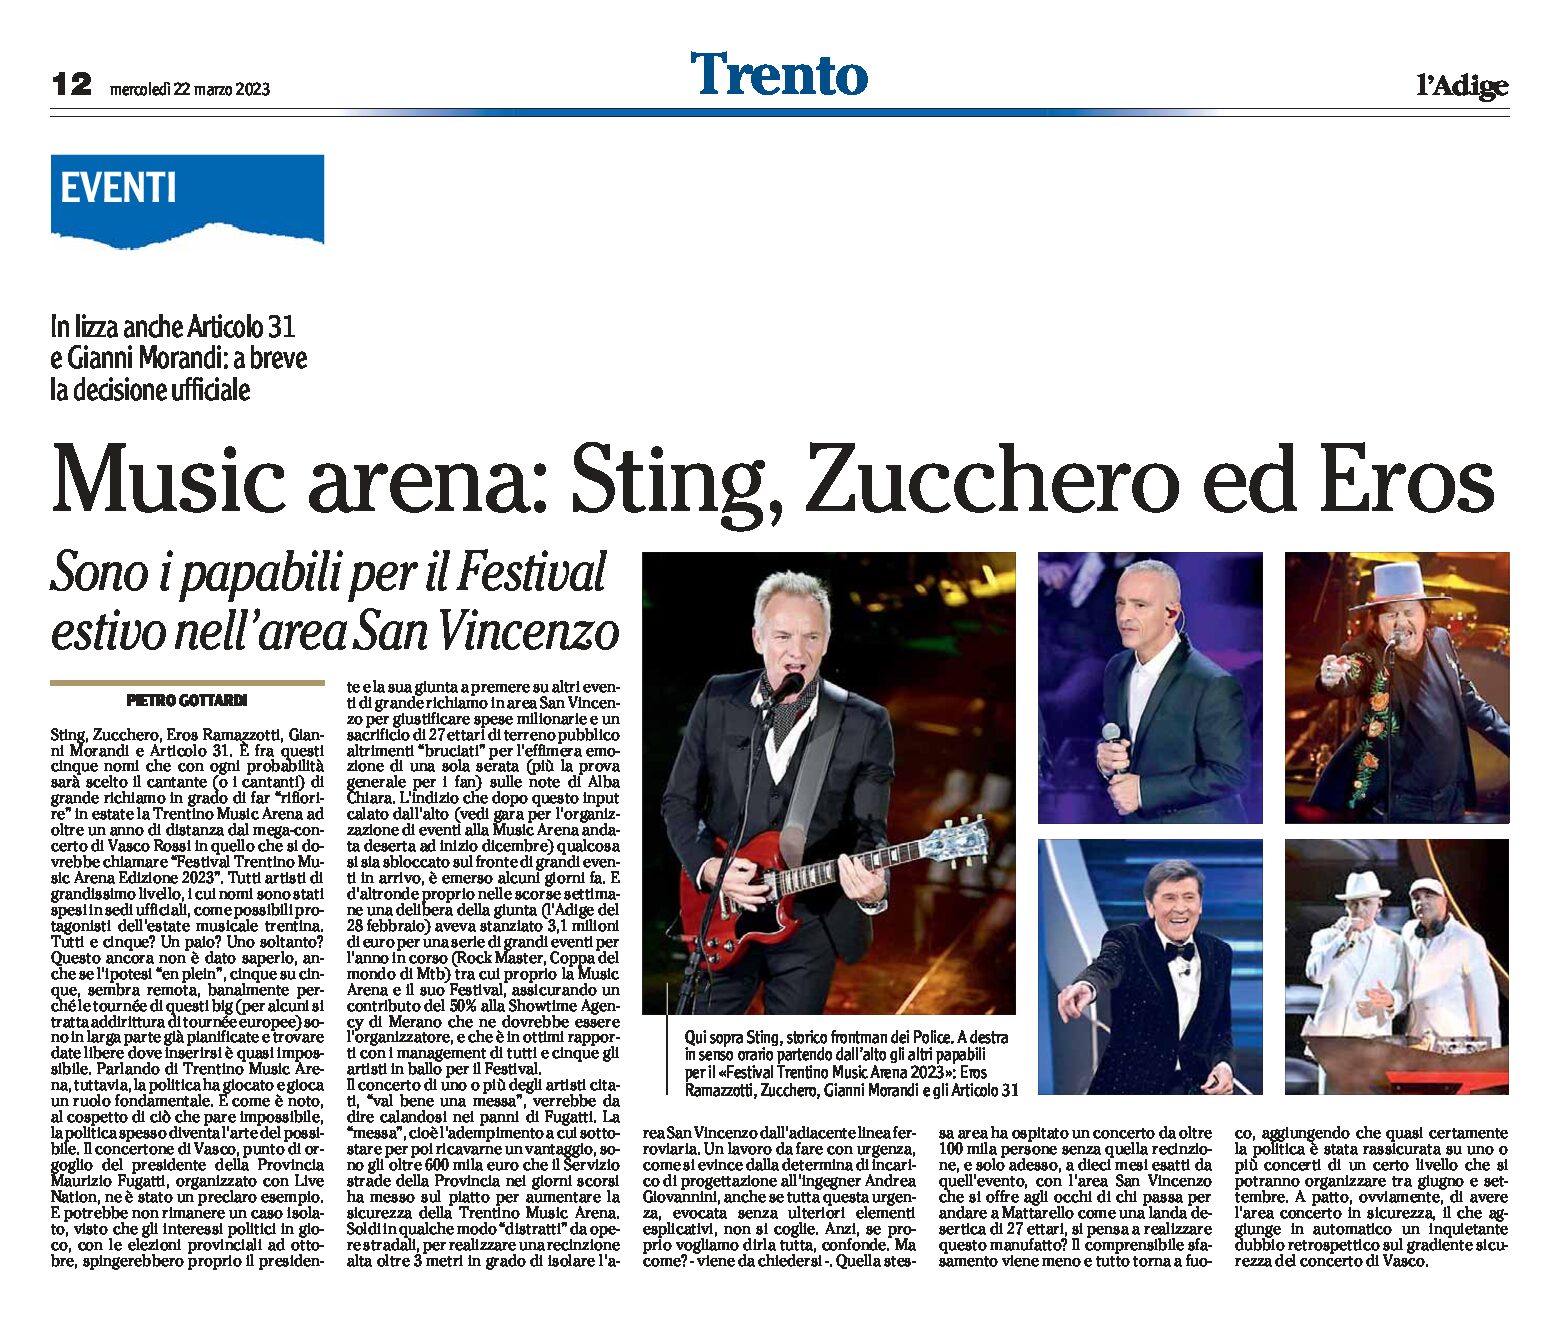 Festival Trentino Music Arena 2023: a breve la decisione ufficiale tra i papabili